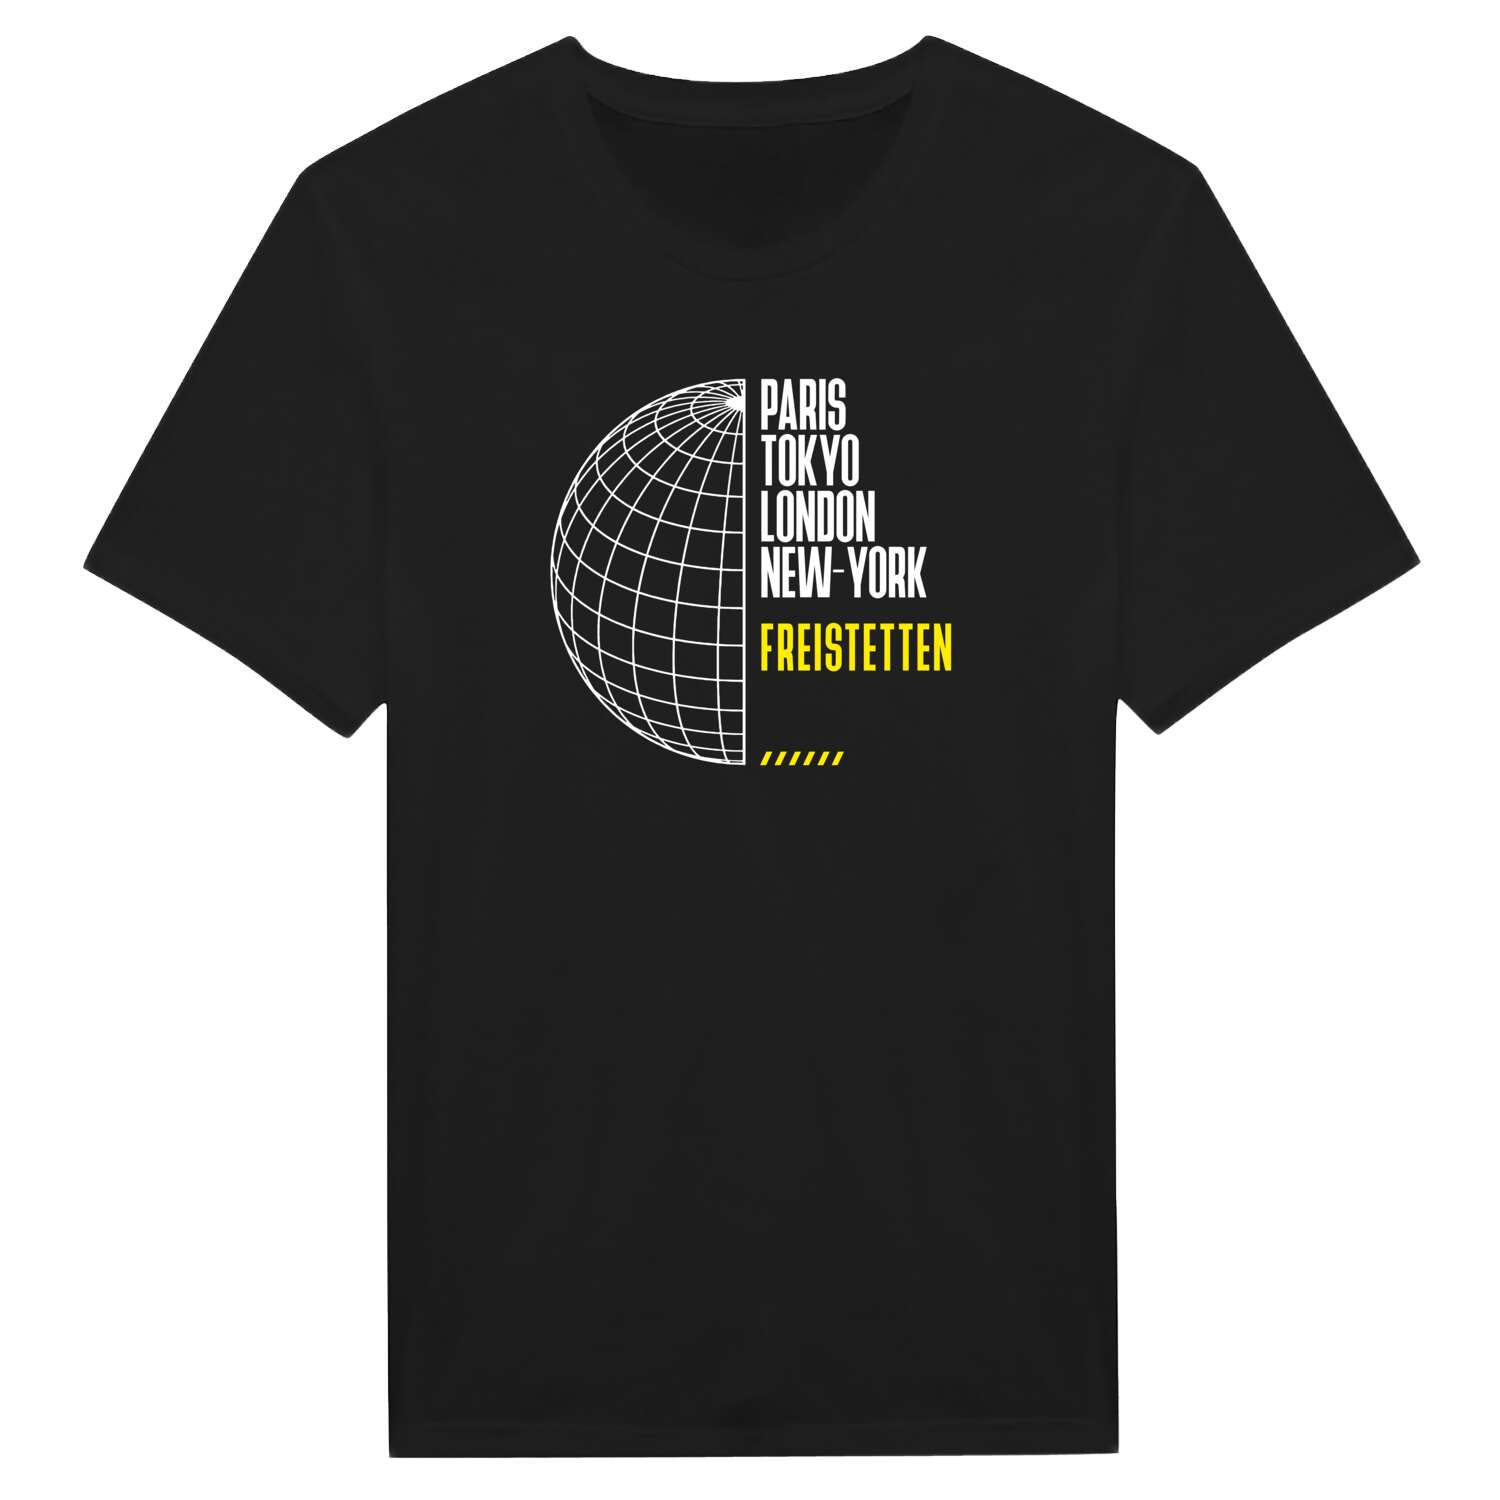 Freistetten T-Shirt »Paris Tokyo London«